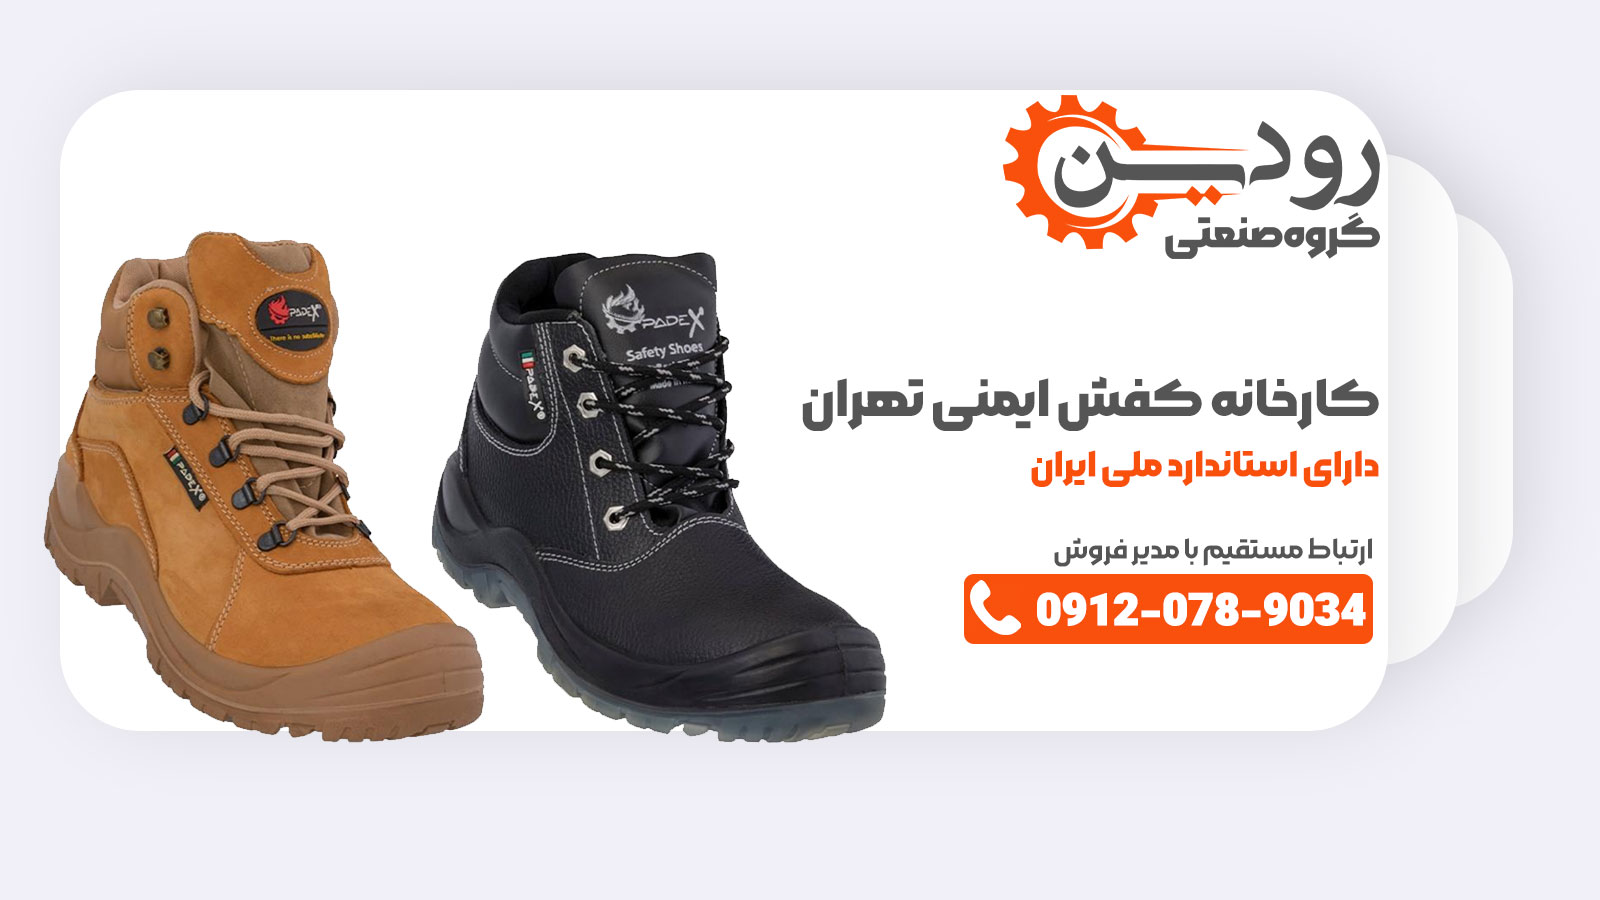 کارخانه تولید کفش ایمنی در تهران کجا میباشد؟